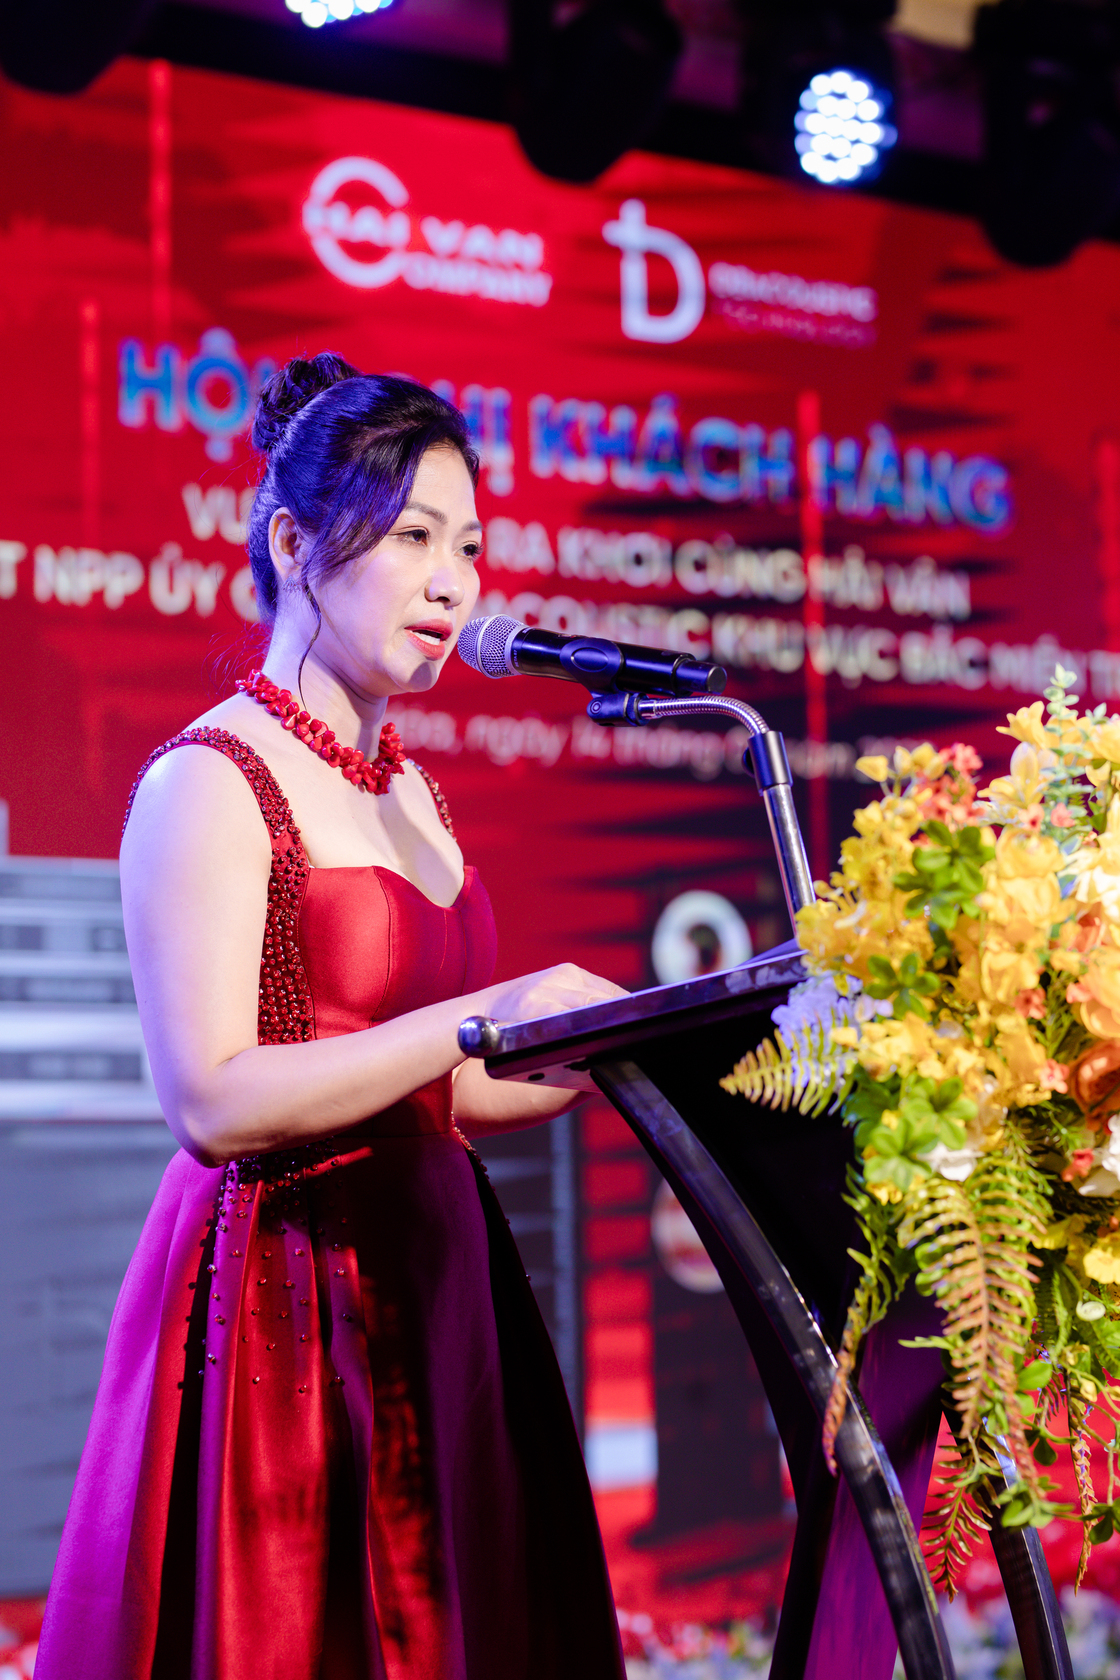 Bà Đặng Hồng Vân - Phó Giám Đốc Công ty Điện Tử Hải Vấn phát  biểu trong chương trình